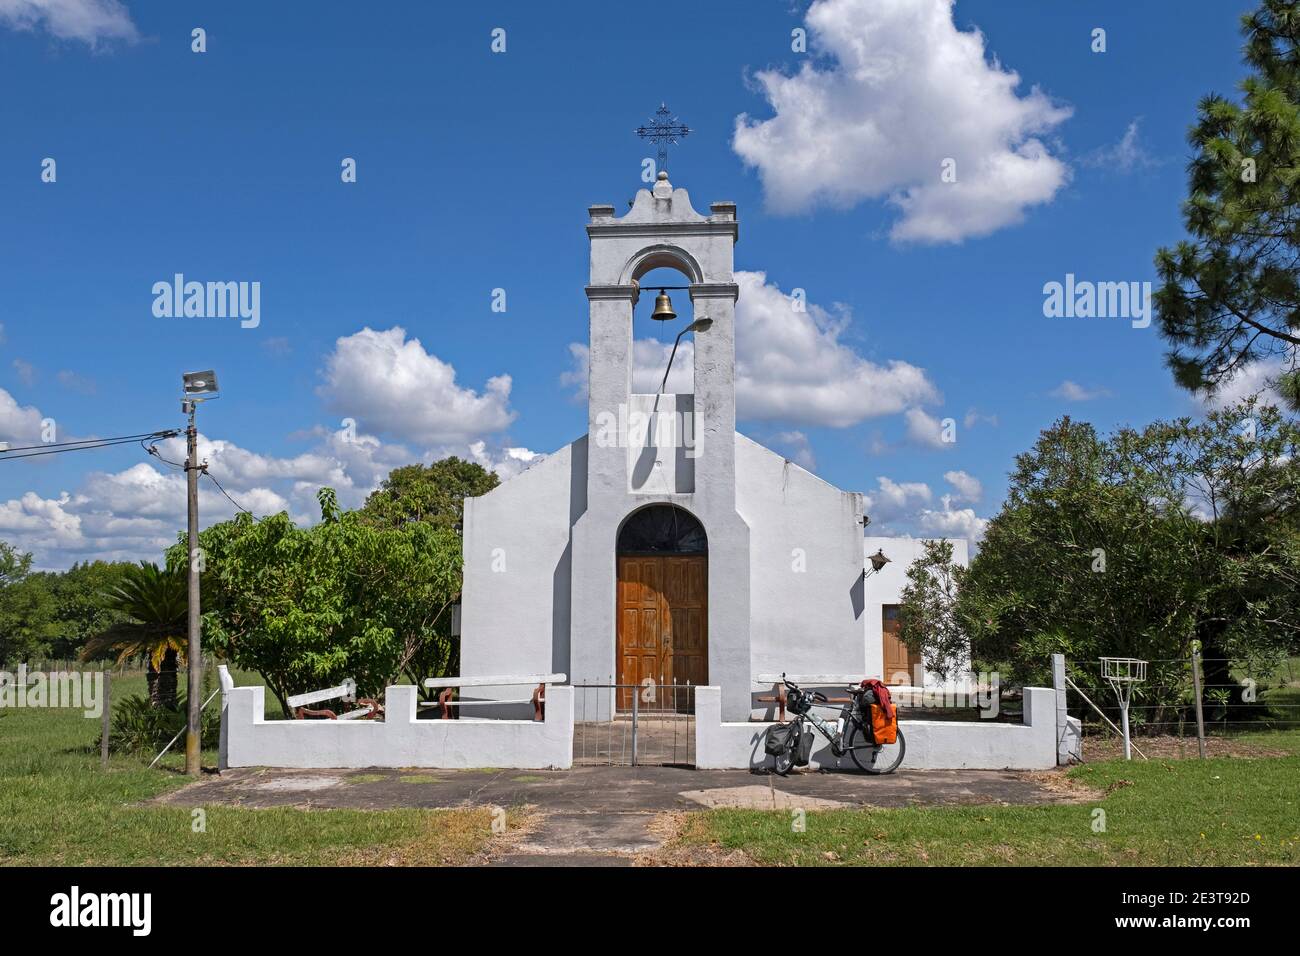 Kleine weiße Kolonialkirche in der Stadt Nuevo Berlín / Neues Berlin im Rio Negro Department des westlichen Uruguay Stockfoto